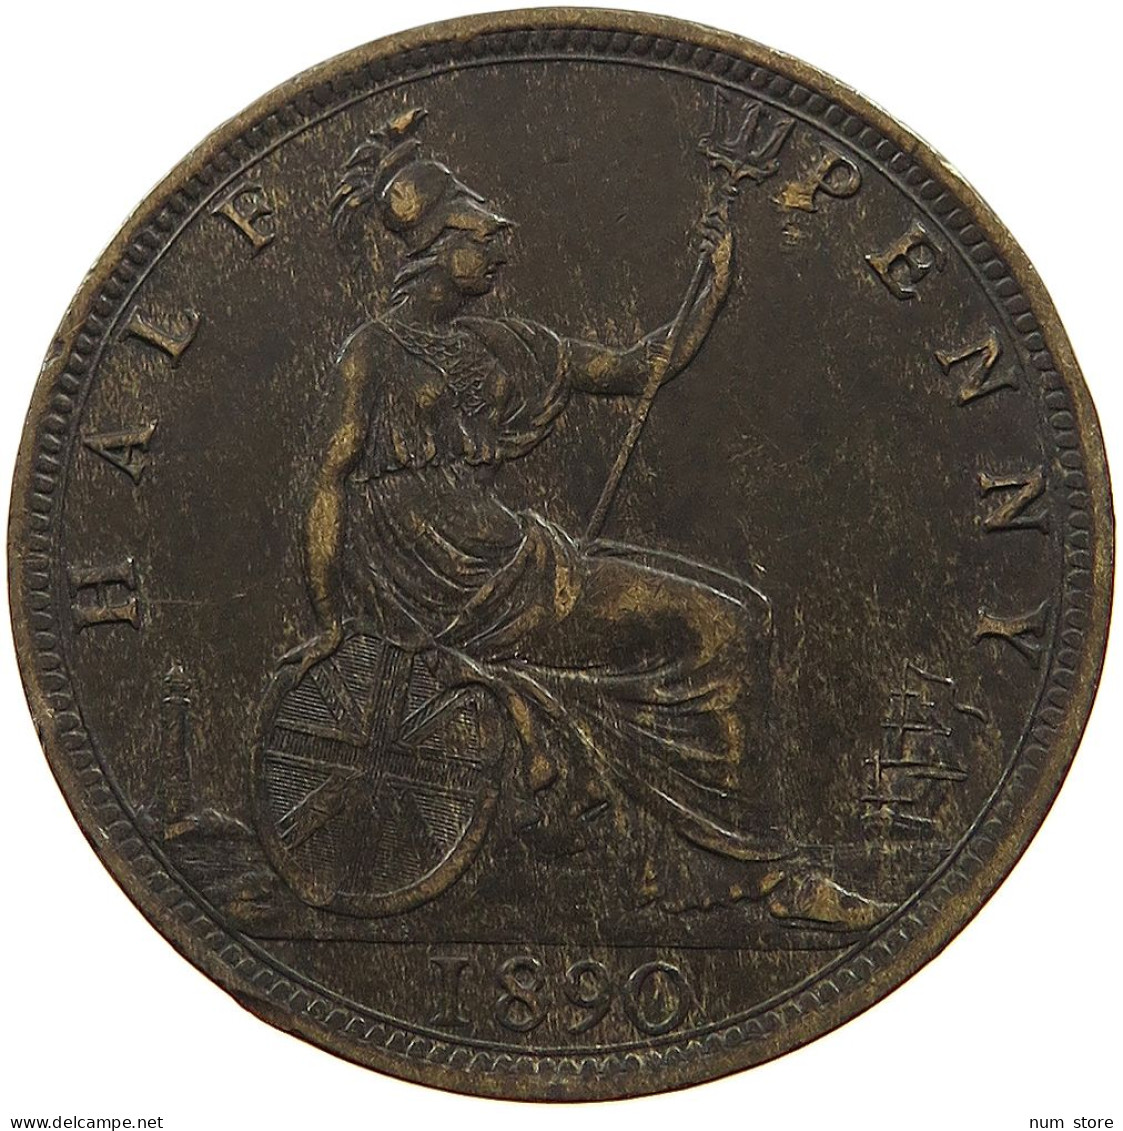 GREAT BRITAIN HALF PENNY 1890 Victoria 1837-1901 #t067 0277 - C. 1/2 Penny